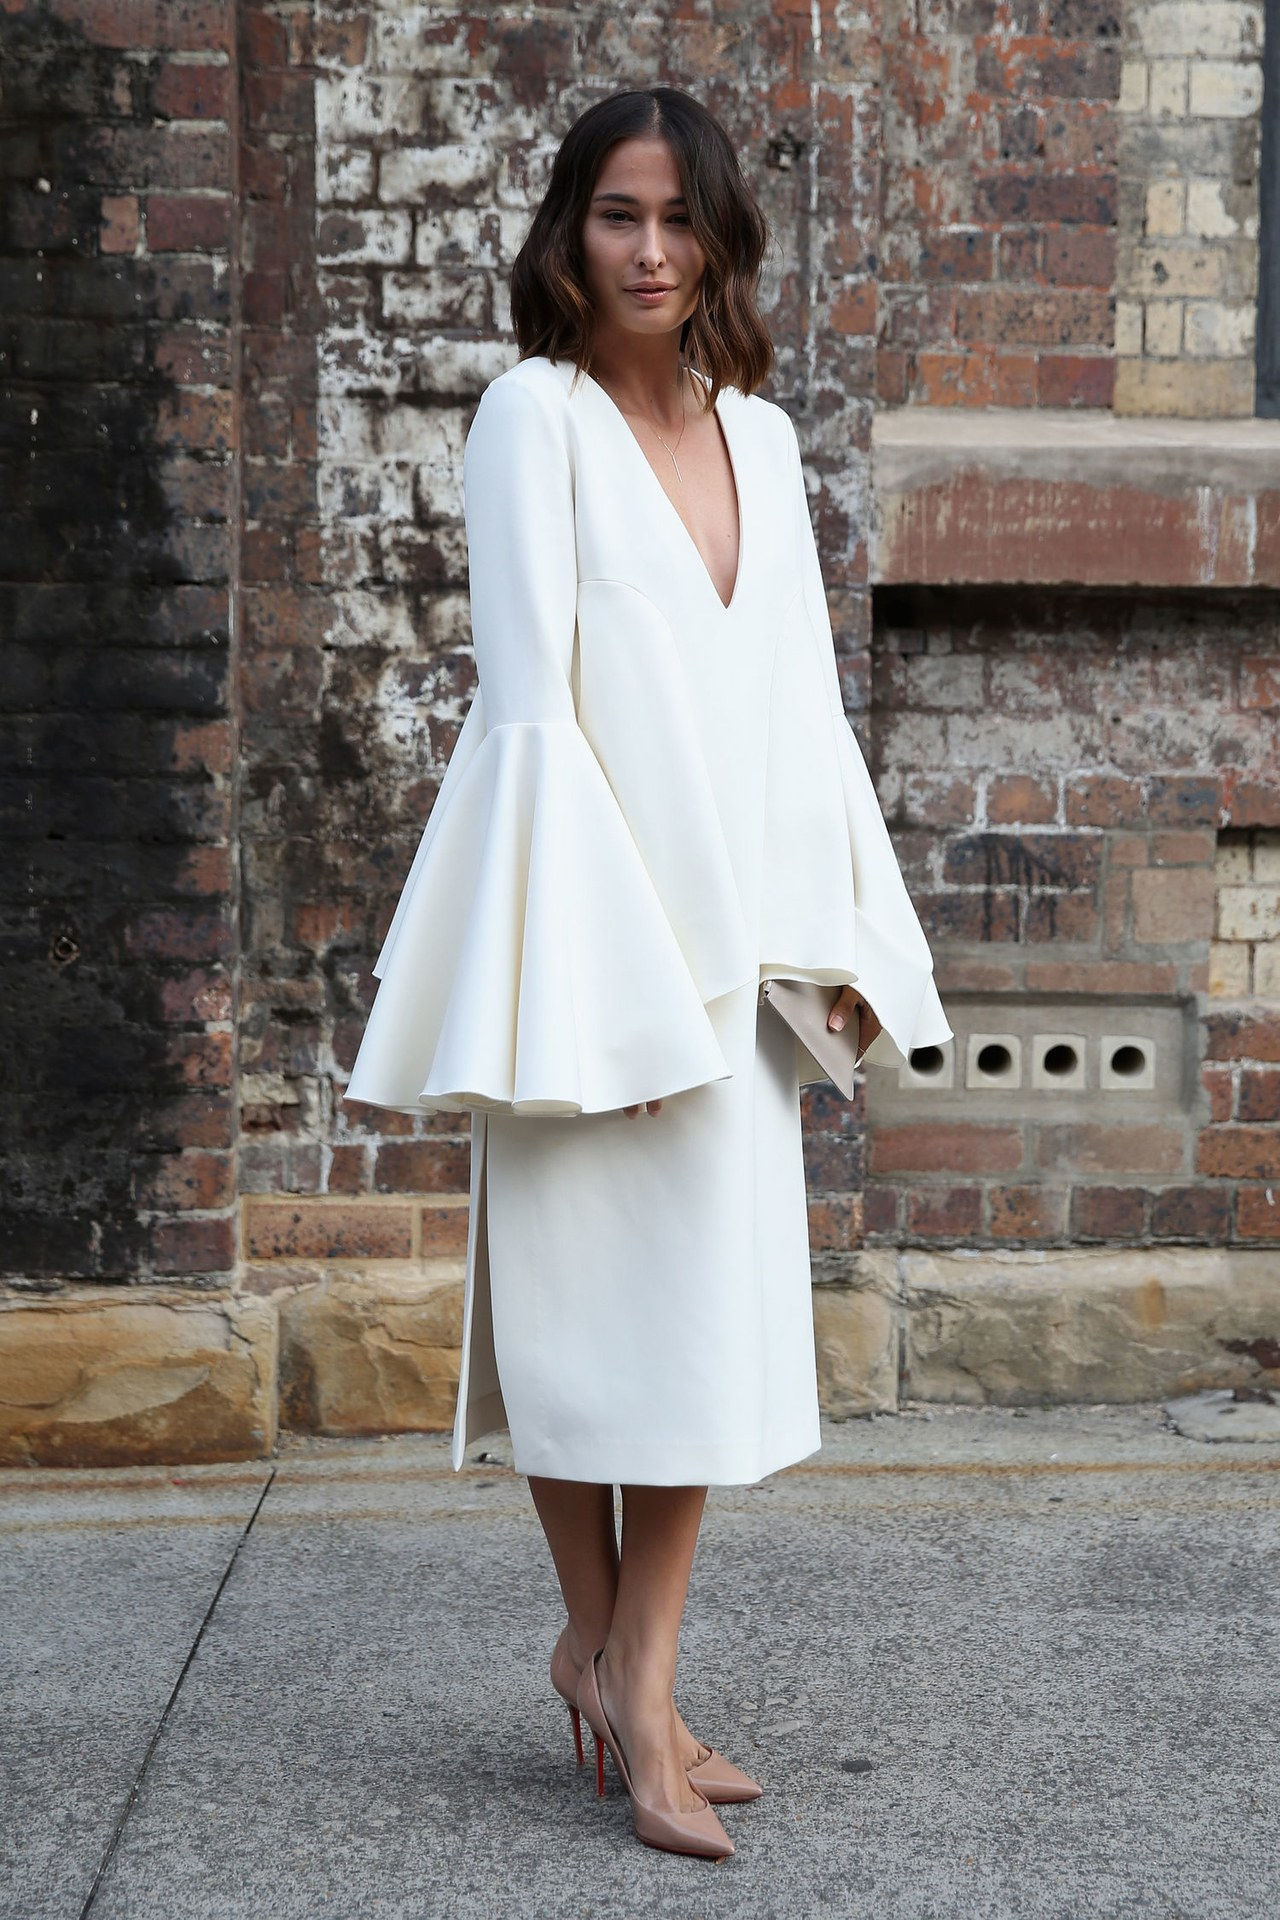 جرس sleeve top white dress outfit ideas getty images